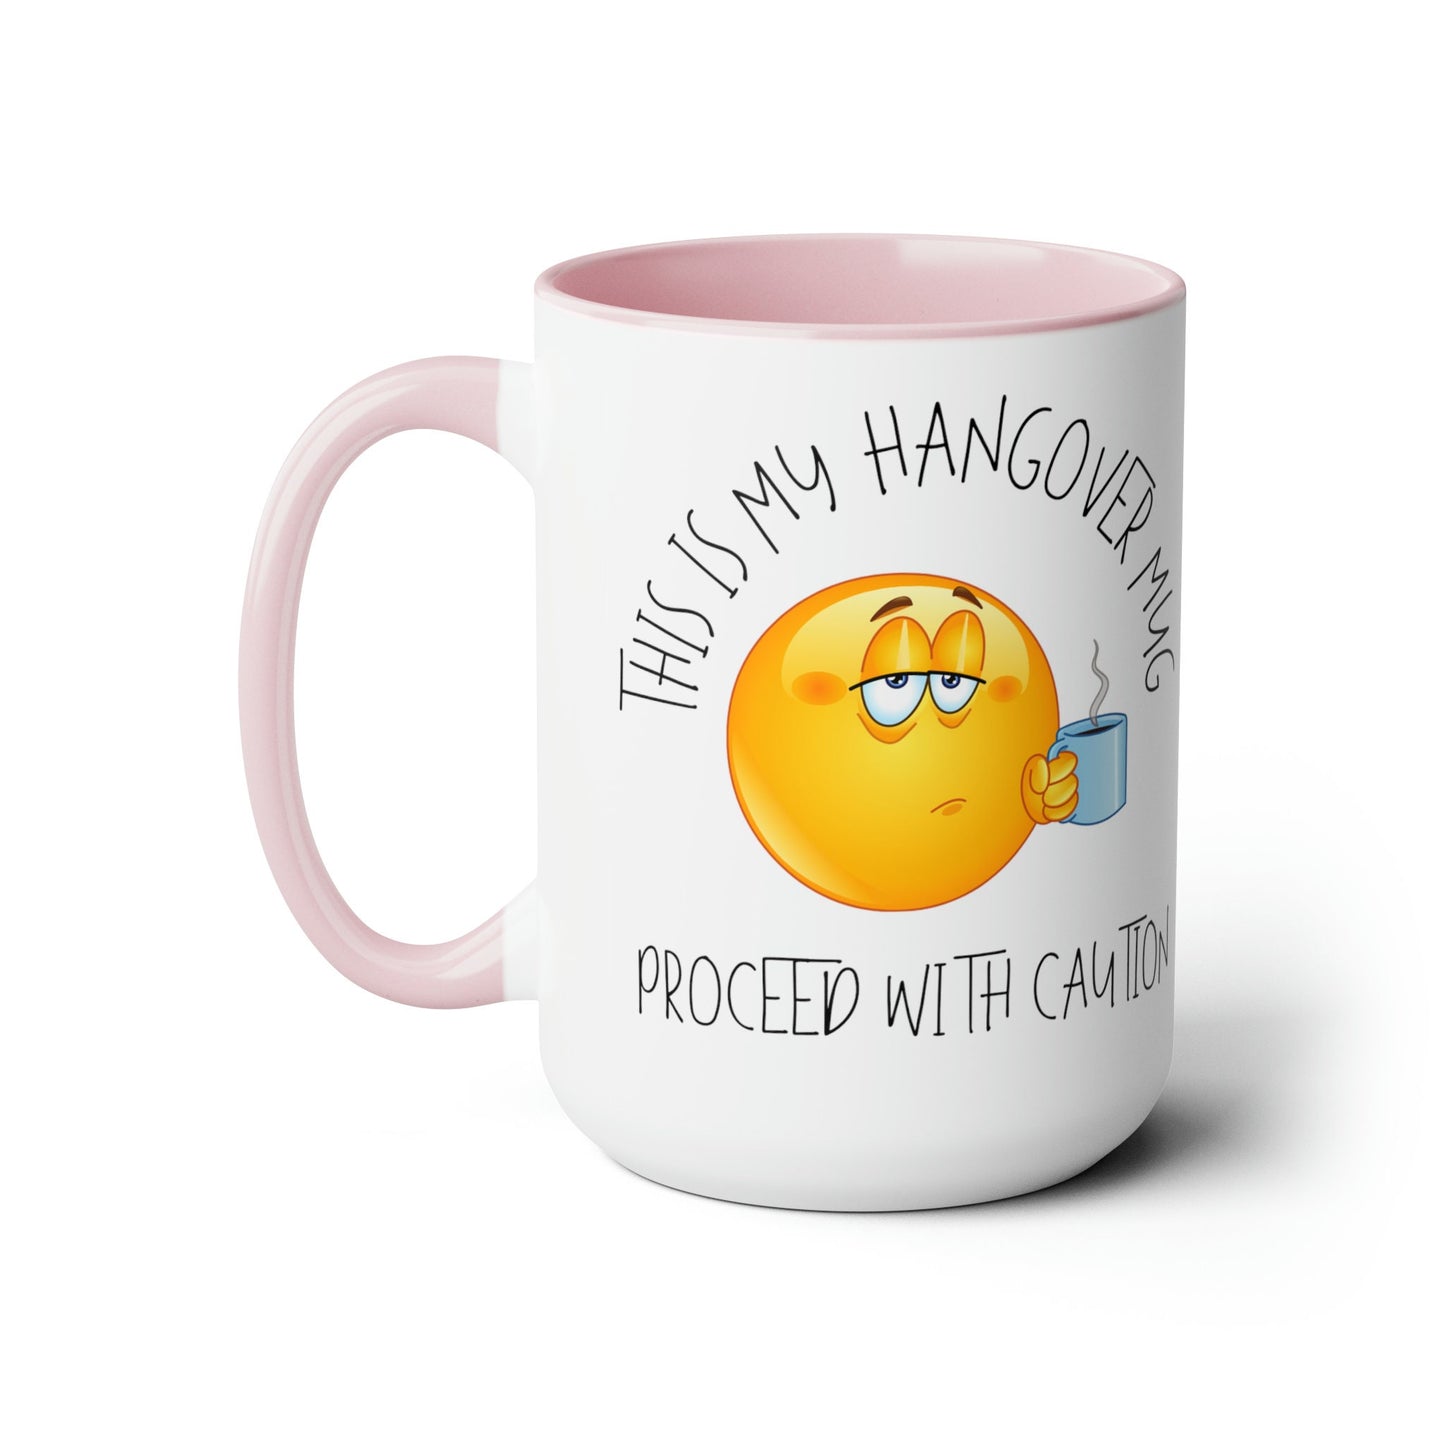 Hangover Mug Two-Tone Coffee Mugs, 15oz